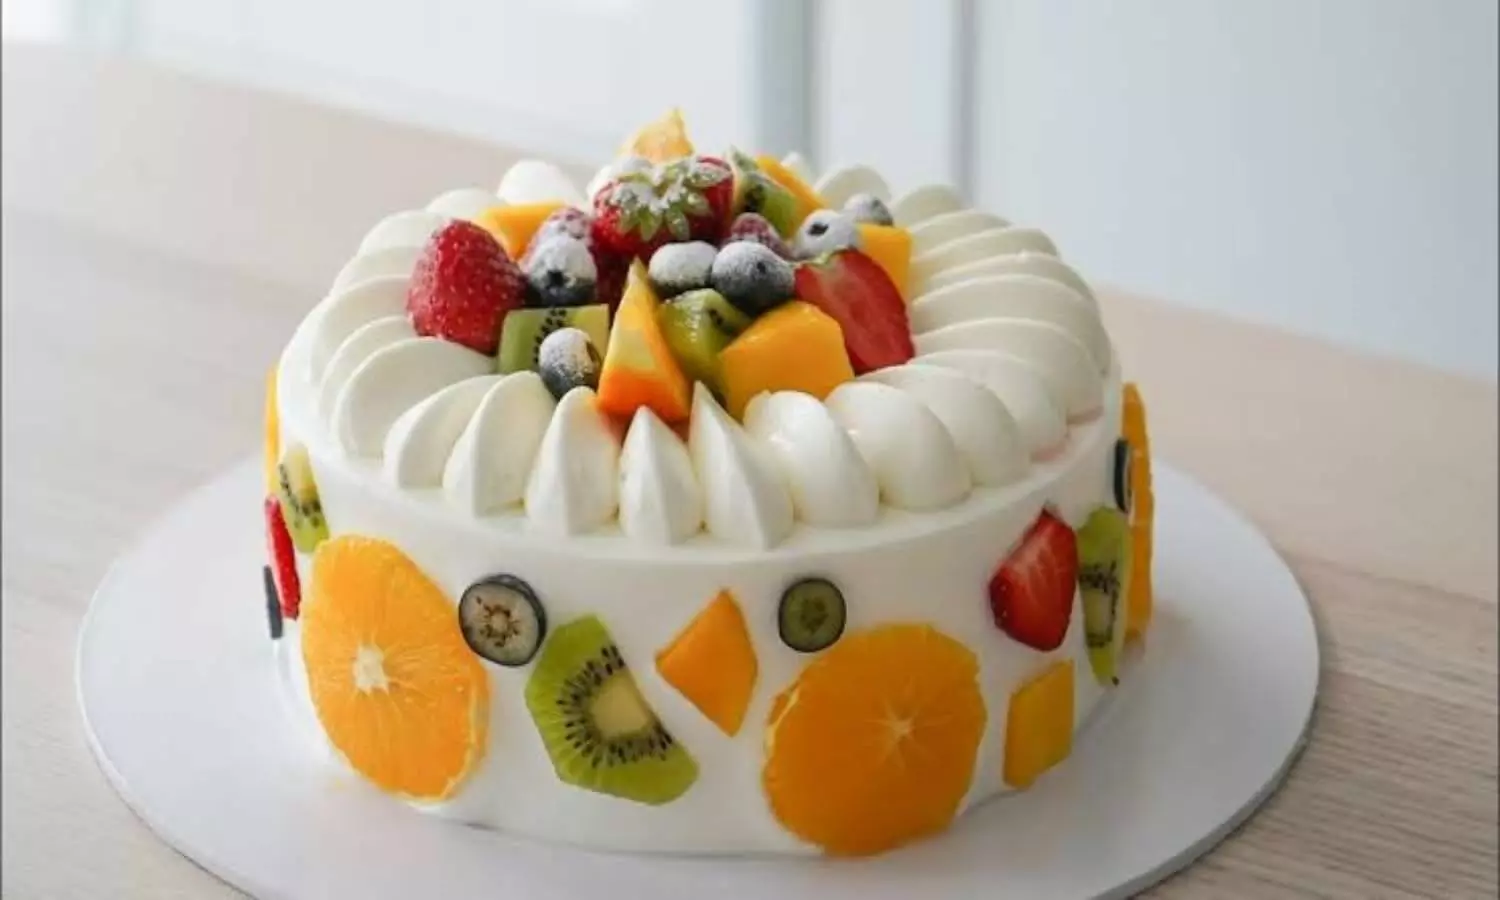 Quaid e Azam birthday cake/Cake Recipe/25 December cake - YouTube